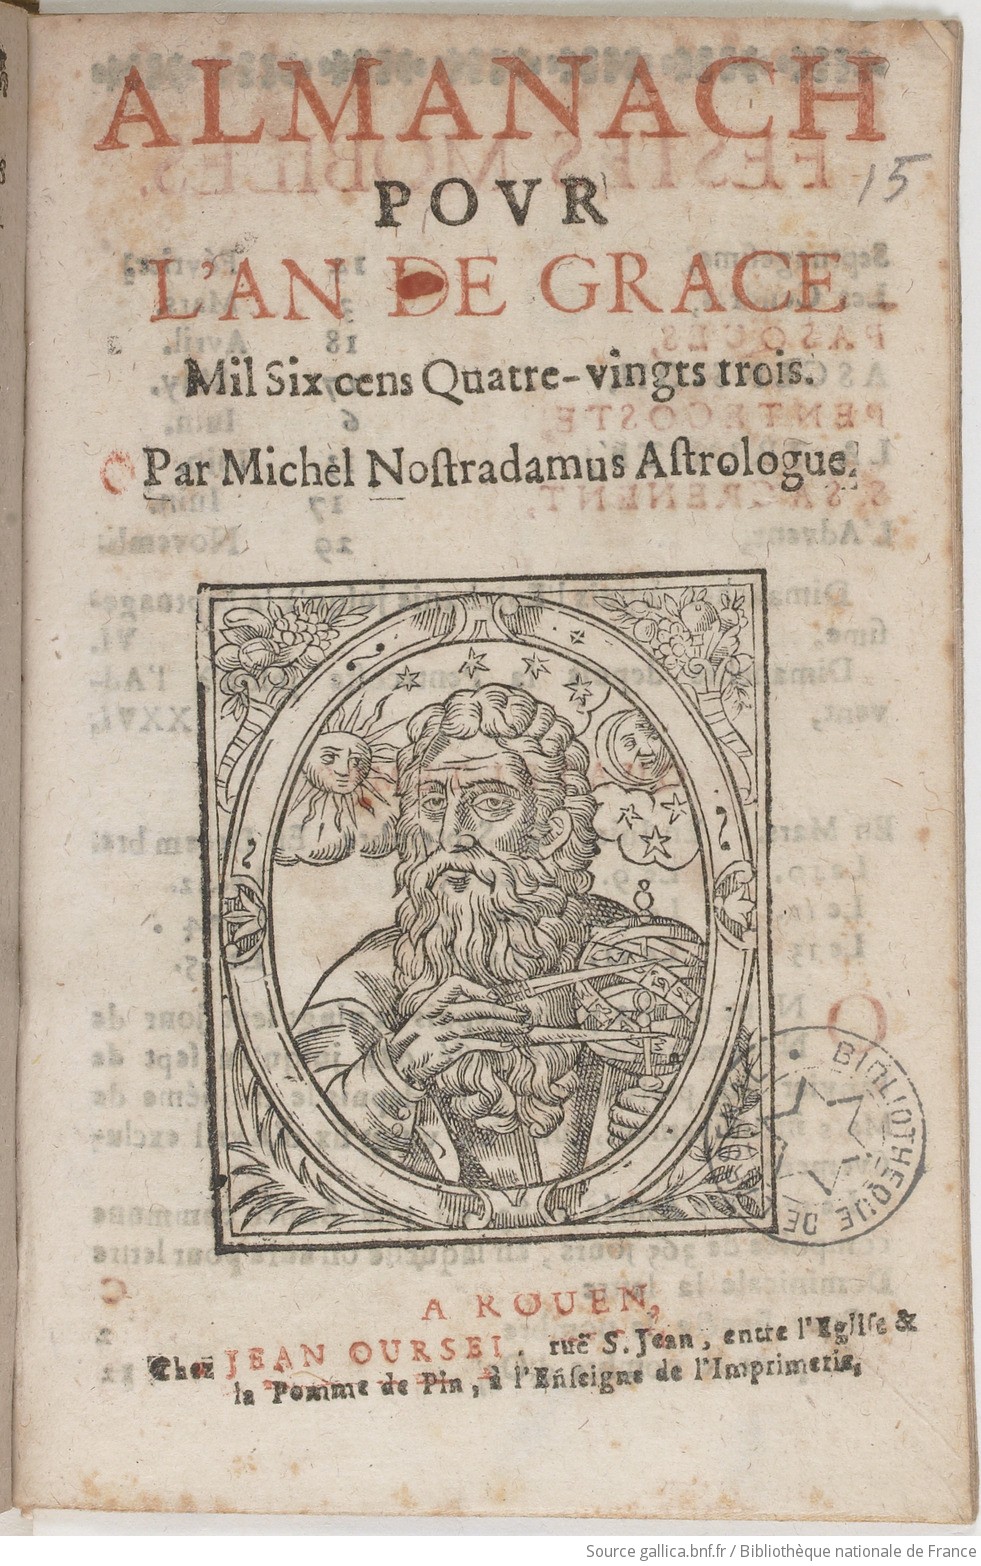 Almanach pour l'an de grâce 1683, par Michel Nostradamus | Gallica